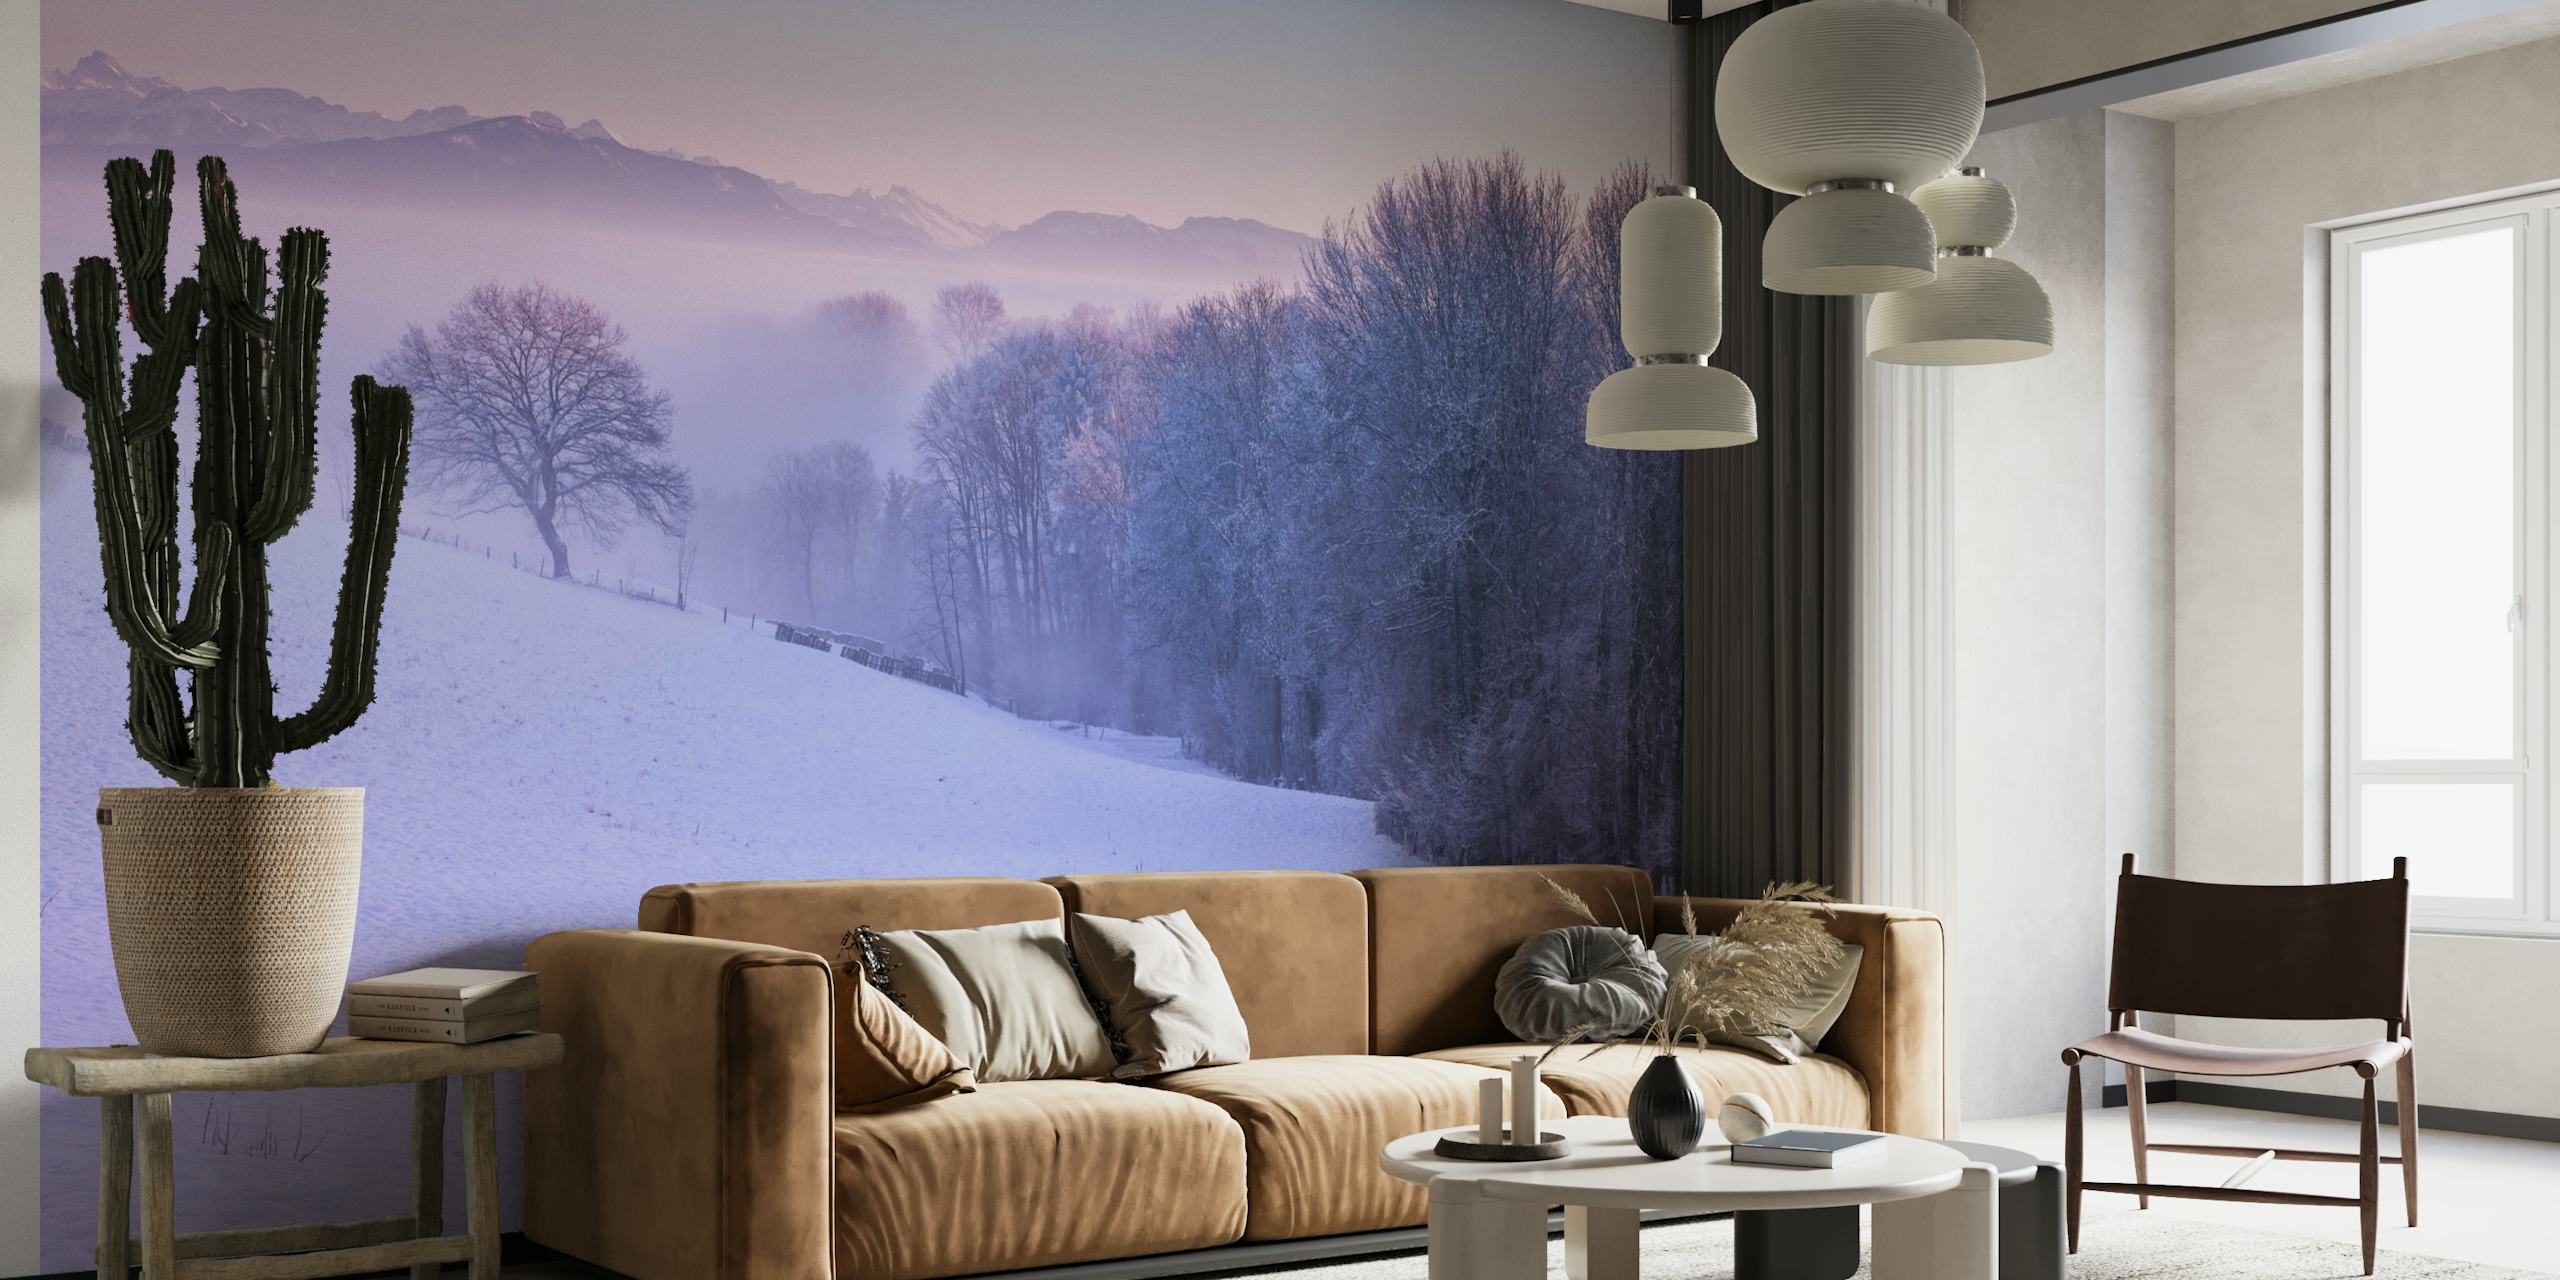 Winter landsacpe in Switzerland behang